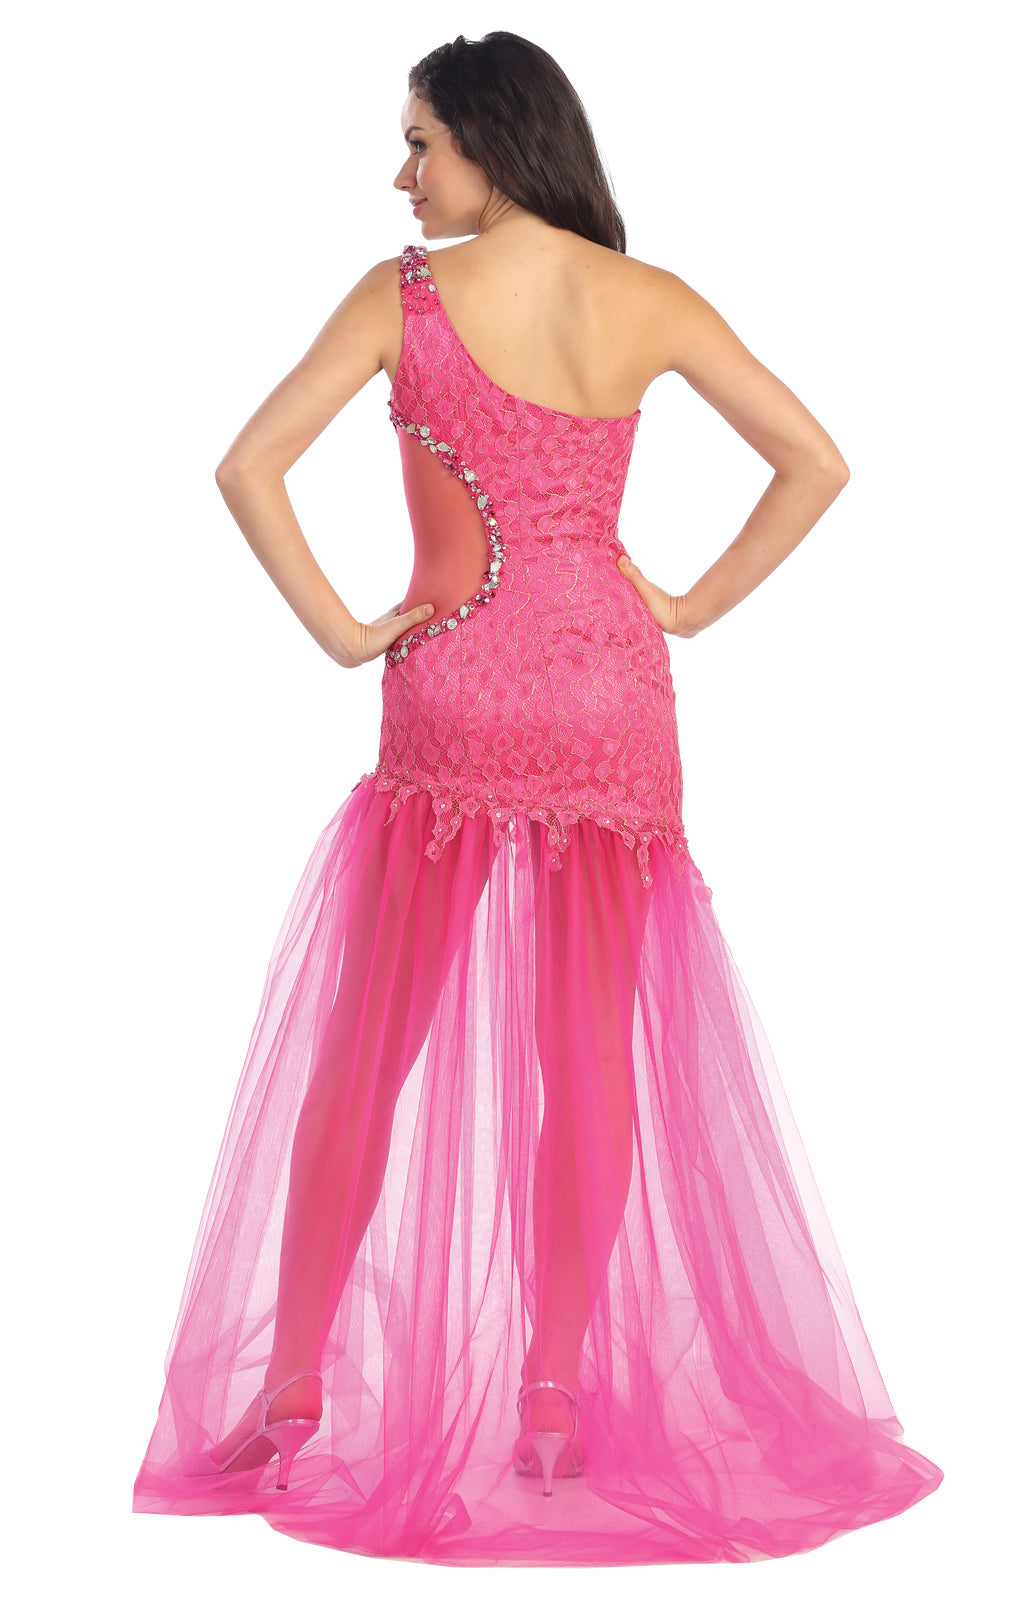 Prom Long One Shoulder Side Out Formal Dress - The Dress Outlet Elizabeth K FUCHSIA